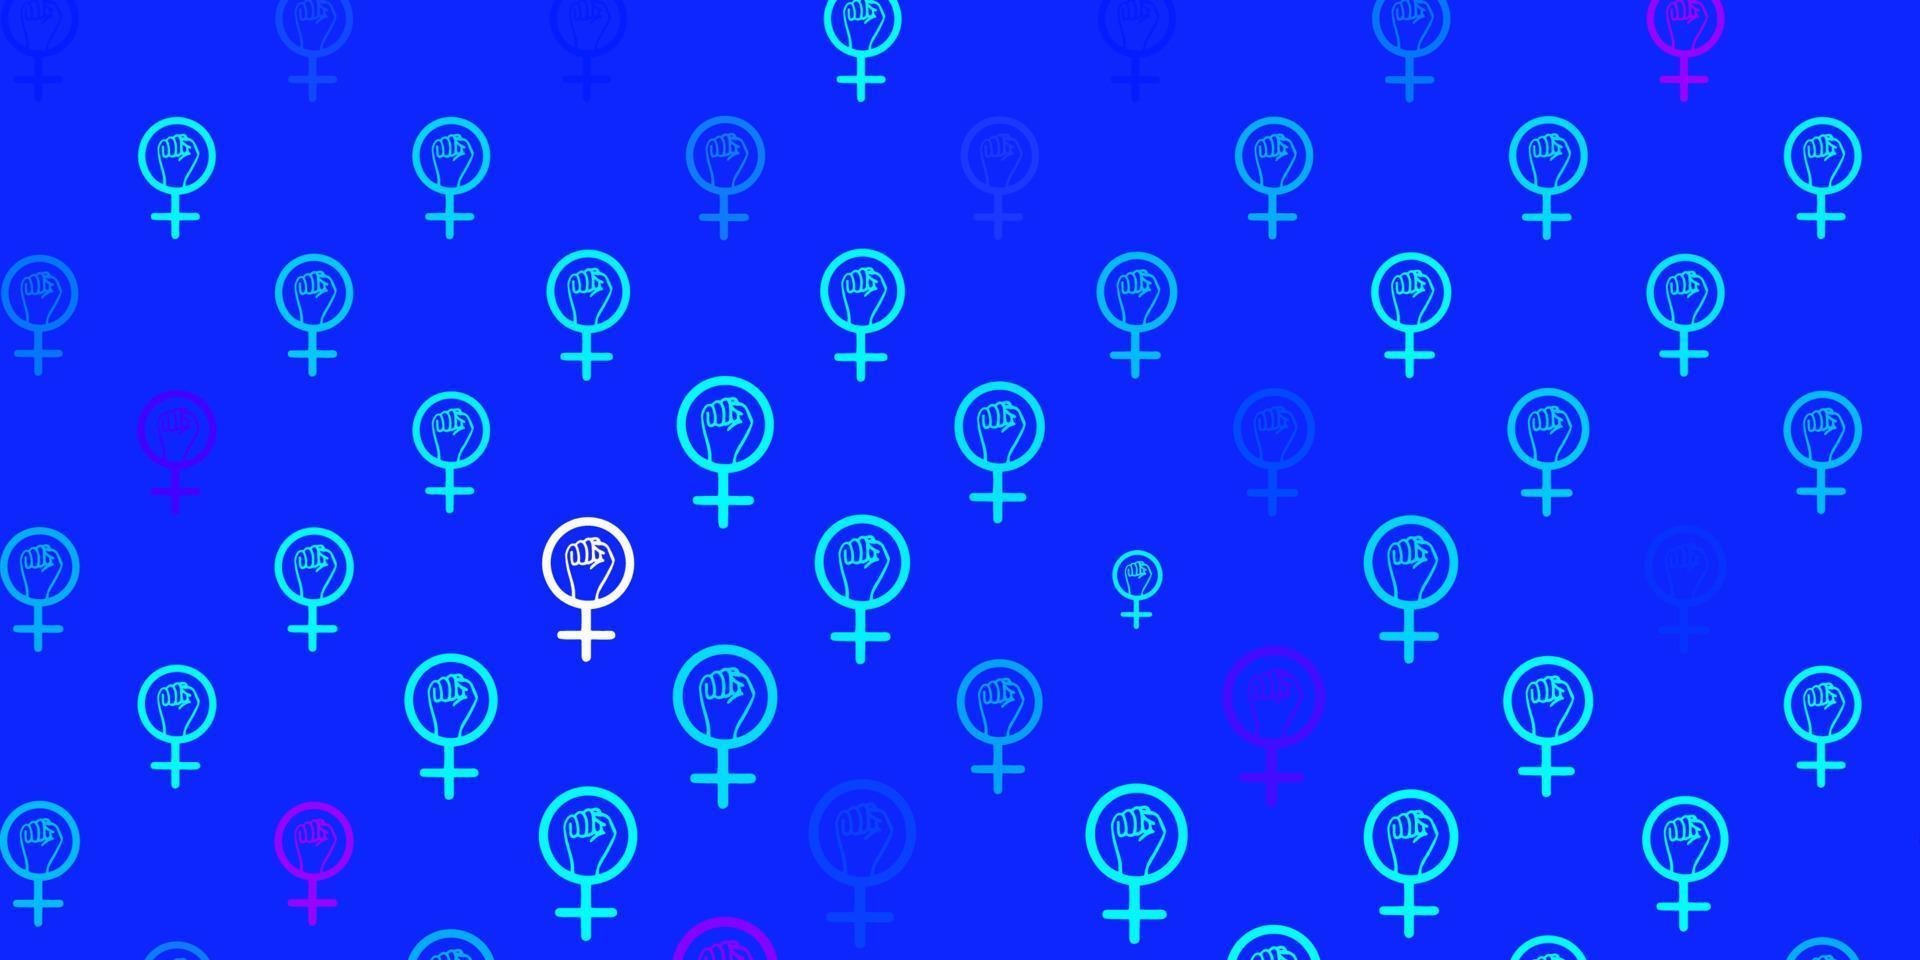 rosa claro, fondo vectorial azul con símbolos de poder femenino. vector